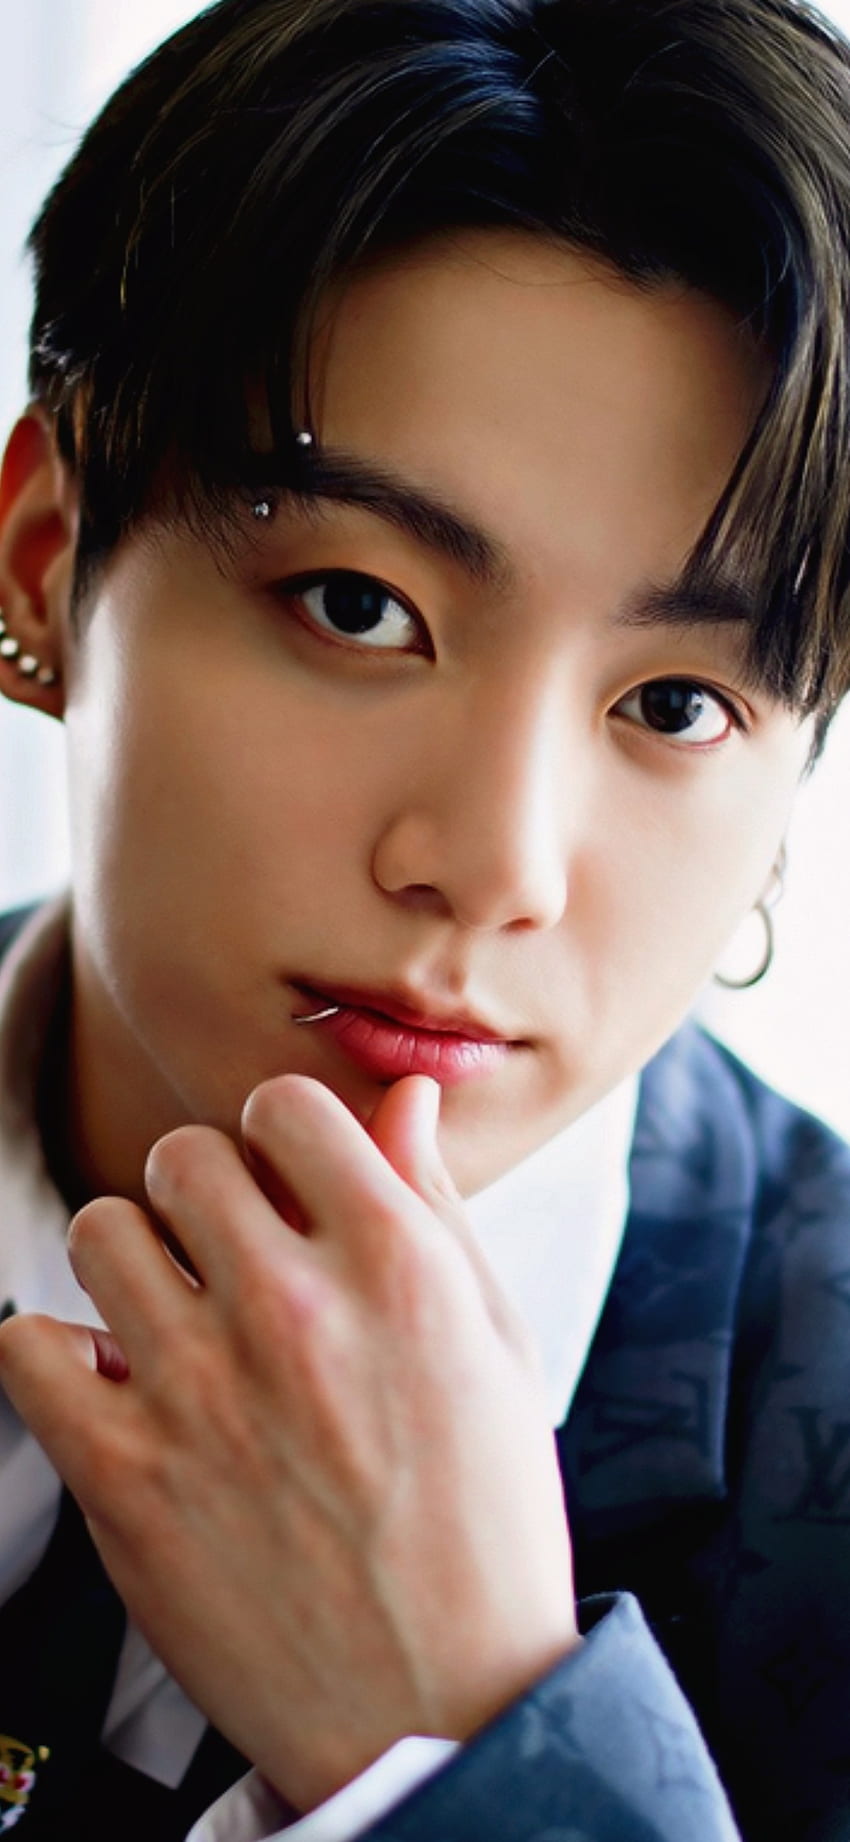 Jungkook, BTS, Ear piercings, Lip piercing, Eyebrow piercing HD phone wallpaper